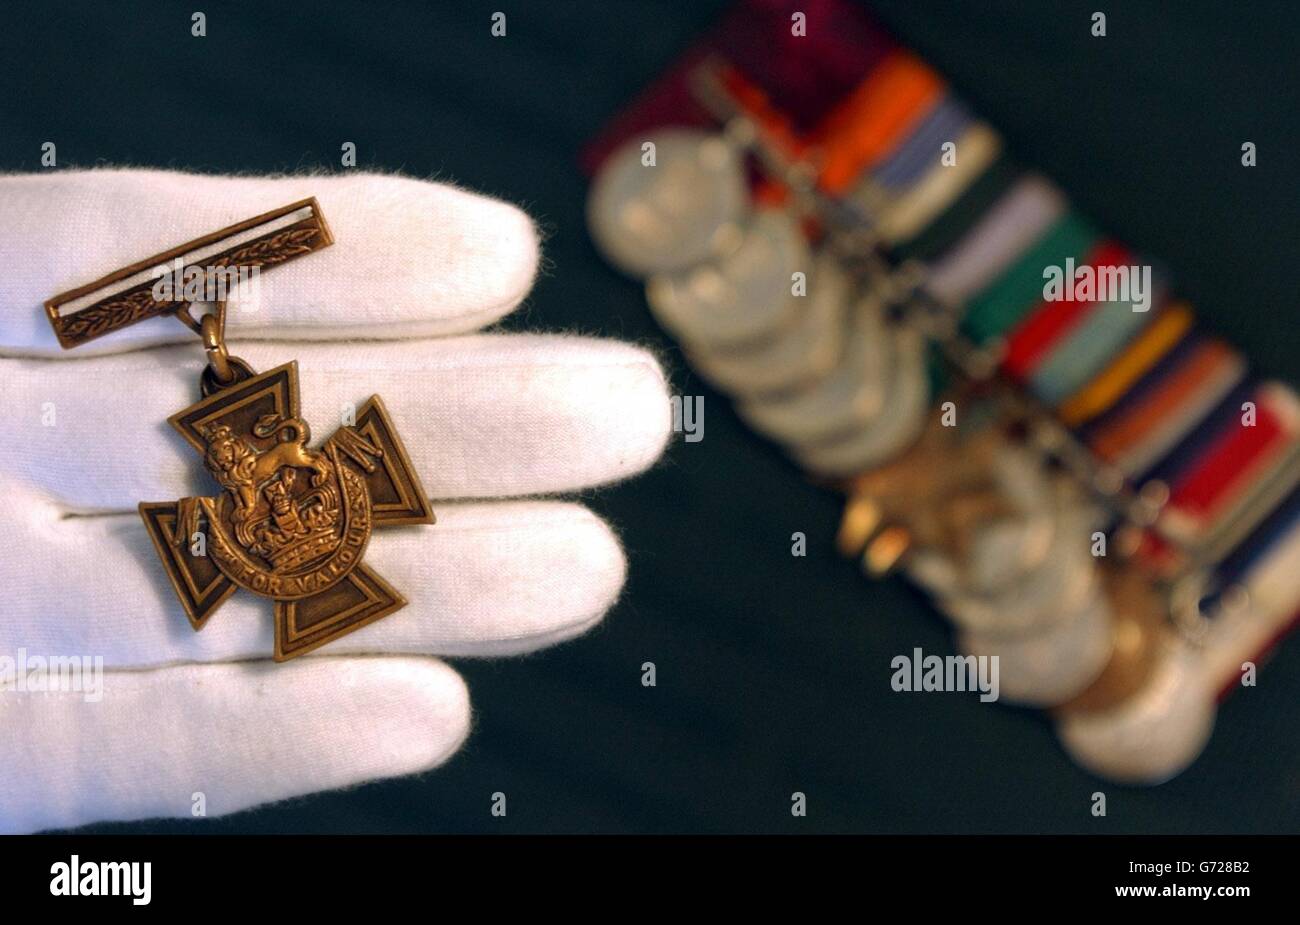 Ein Spink-Mitarbeiter hält das Victoria-Kreuz, das am Dienstag, 6. Juli 2004, dem Ehrenhauptmann Agansing Rai (links) der 5. Royal Gurkha Gewehre im Zentrum von London für "Unbeugsamen Mut" verliehen wurde. Die Medaille, die Kapitän Rai nach einer Schlacht in Burma im Jahr 1944 verliehen wurde, wird voraussichtlich 110,000 - 130,000 erhalten, wenn sie von Spink am 22. Juli als Teil von Kapitän Rais Satz von 13 Medaillen verkauft wird. Stockfoto